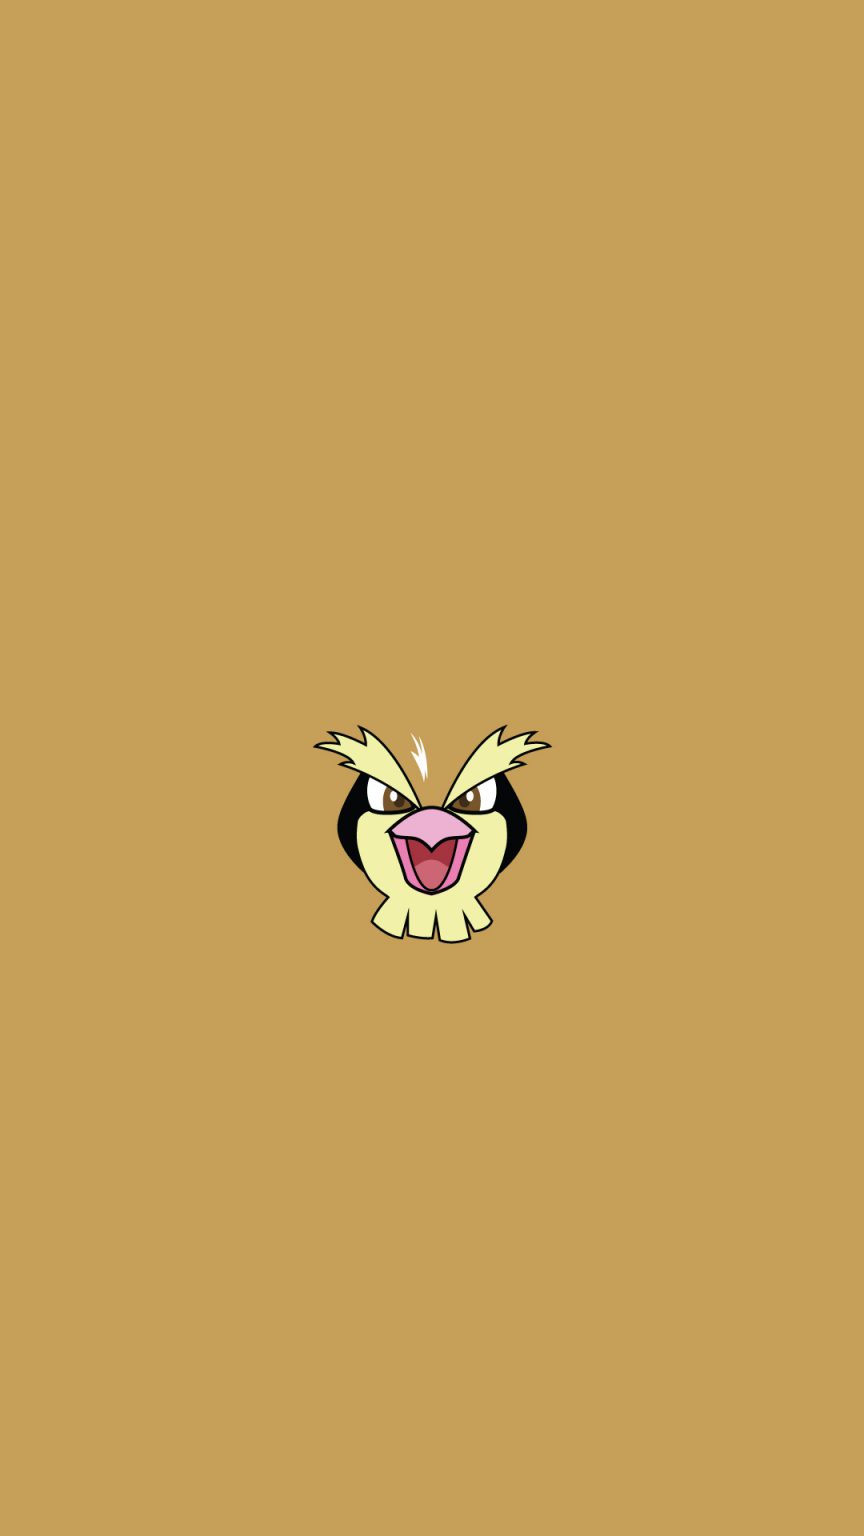 Kartun Karakter Pikachu Pidgey